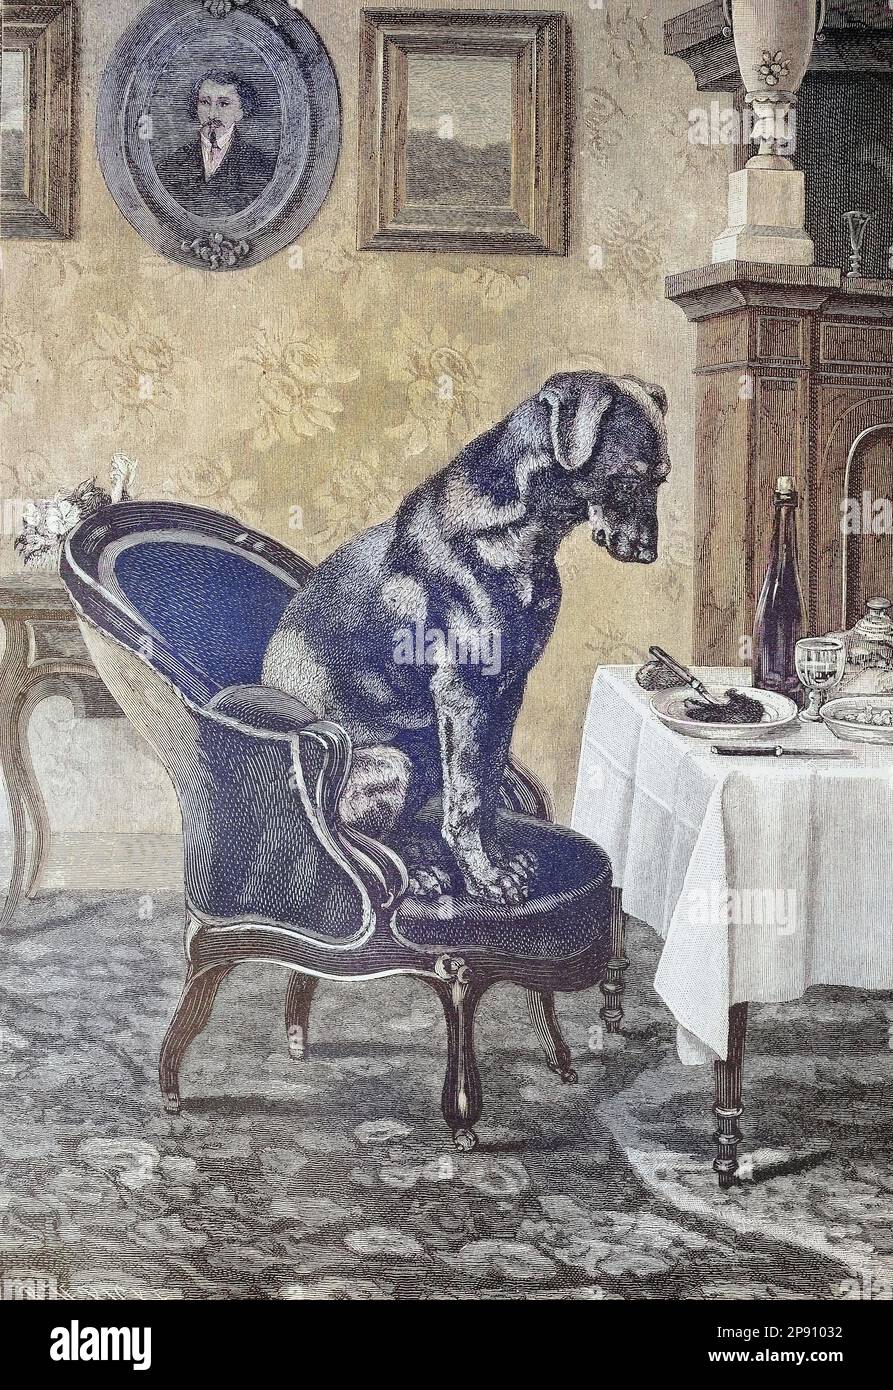 Hund sitzt auf einem Stuhl am Tisch und schaut begehrlich auf einen vollen Teller, Historiisch, digital restaurierte Reproduktion von einer Vorlage aus dem 19. Jahrhundert Foto Stock